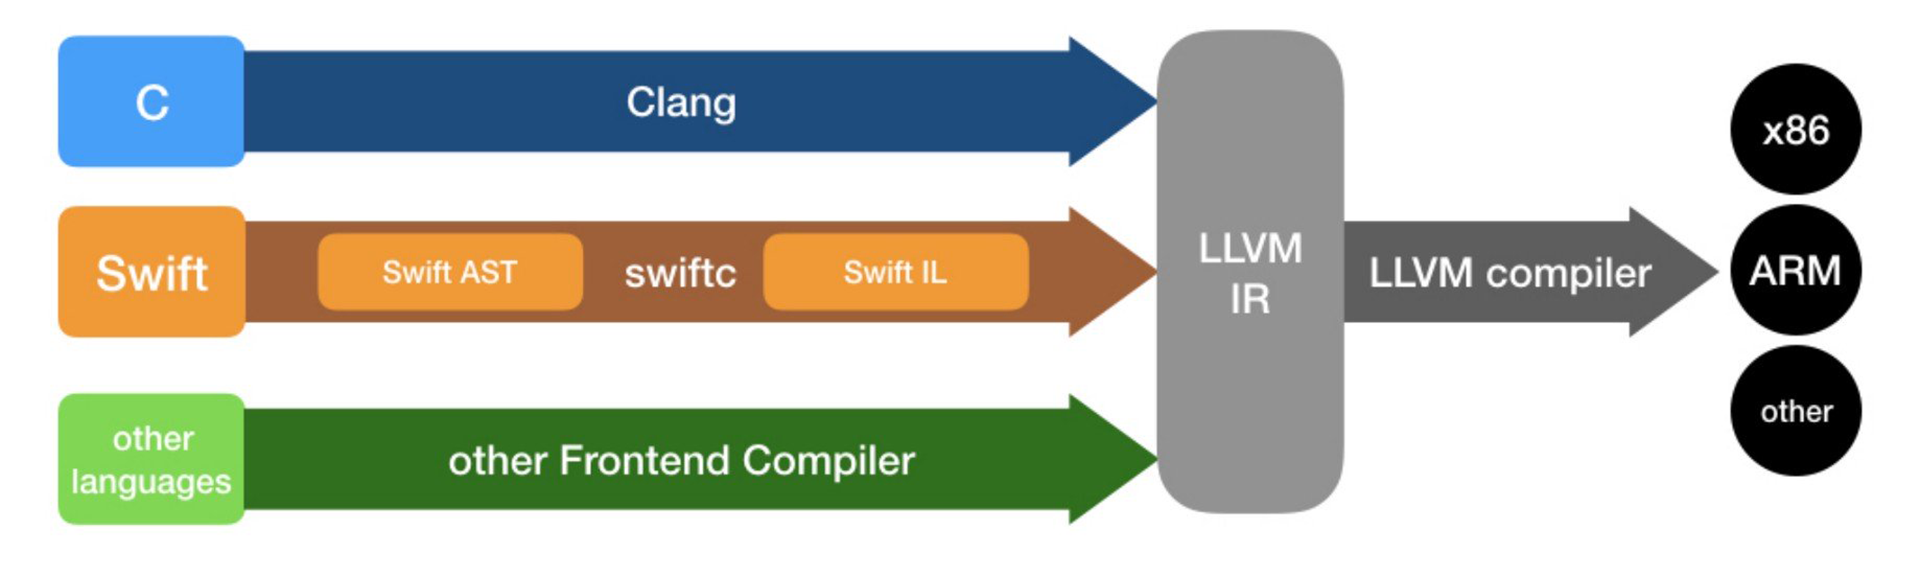 LLVM Frontend-Backend Compiler Architecture (Source: Swift, C, LLVM Compiler Optimization)